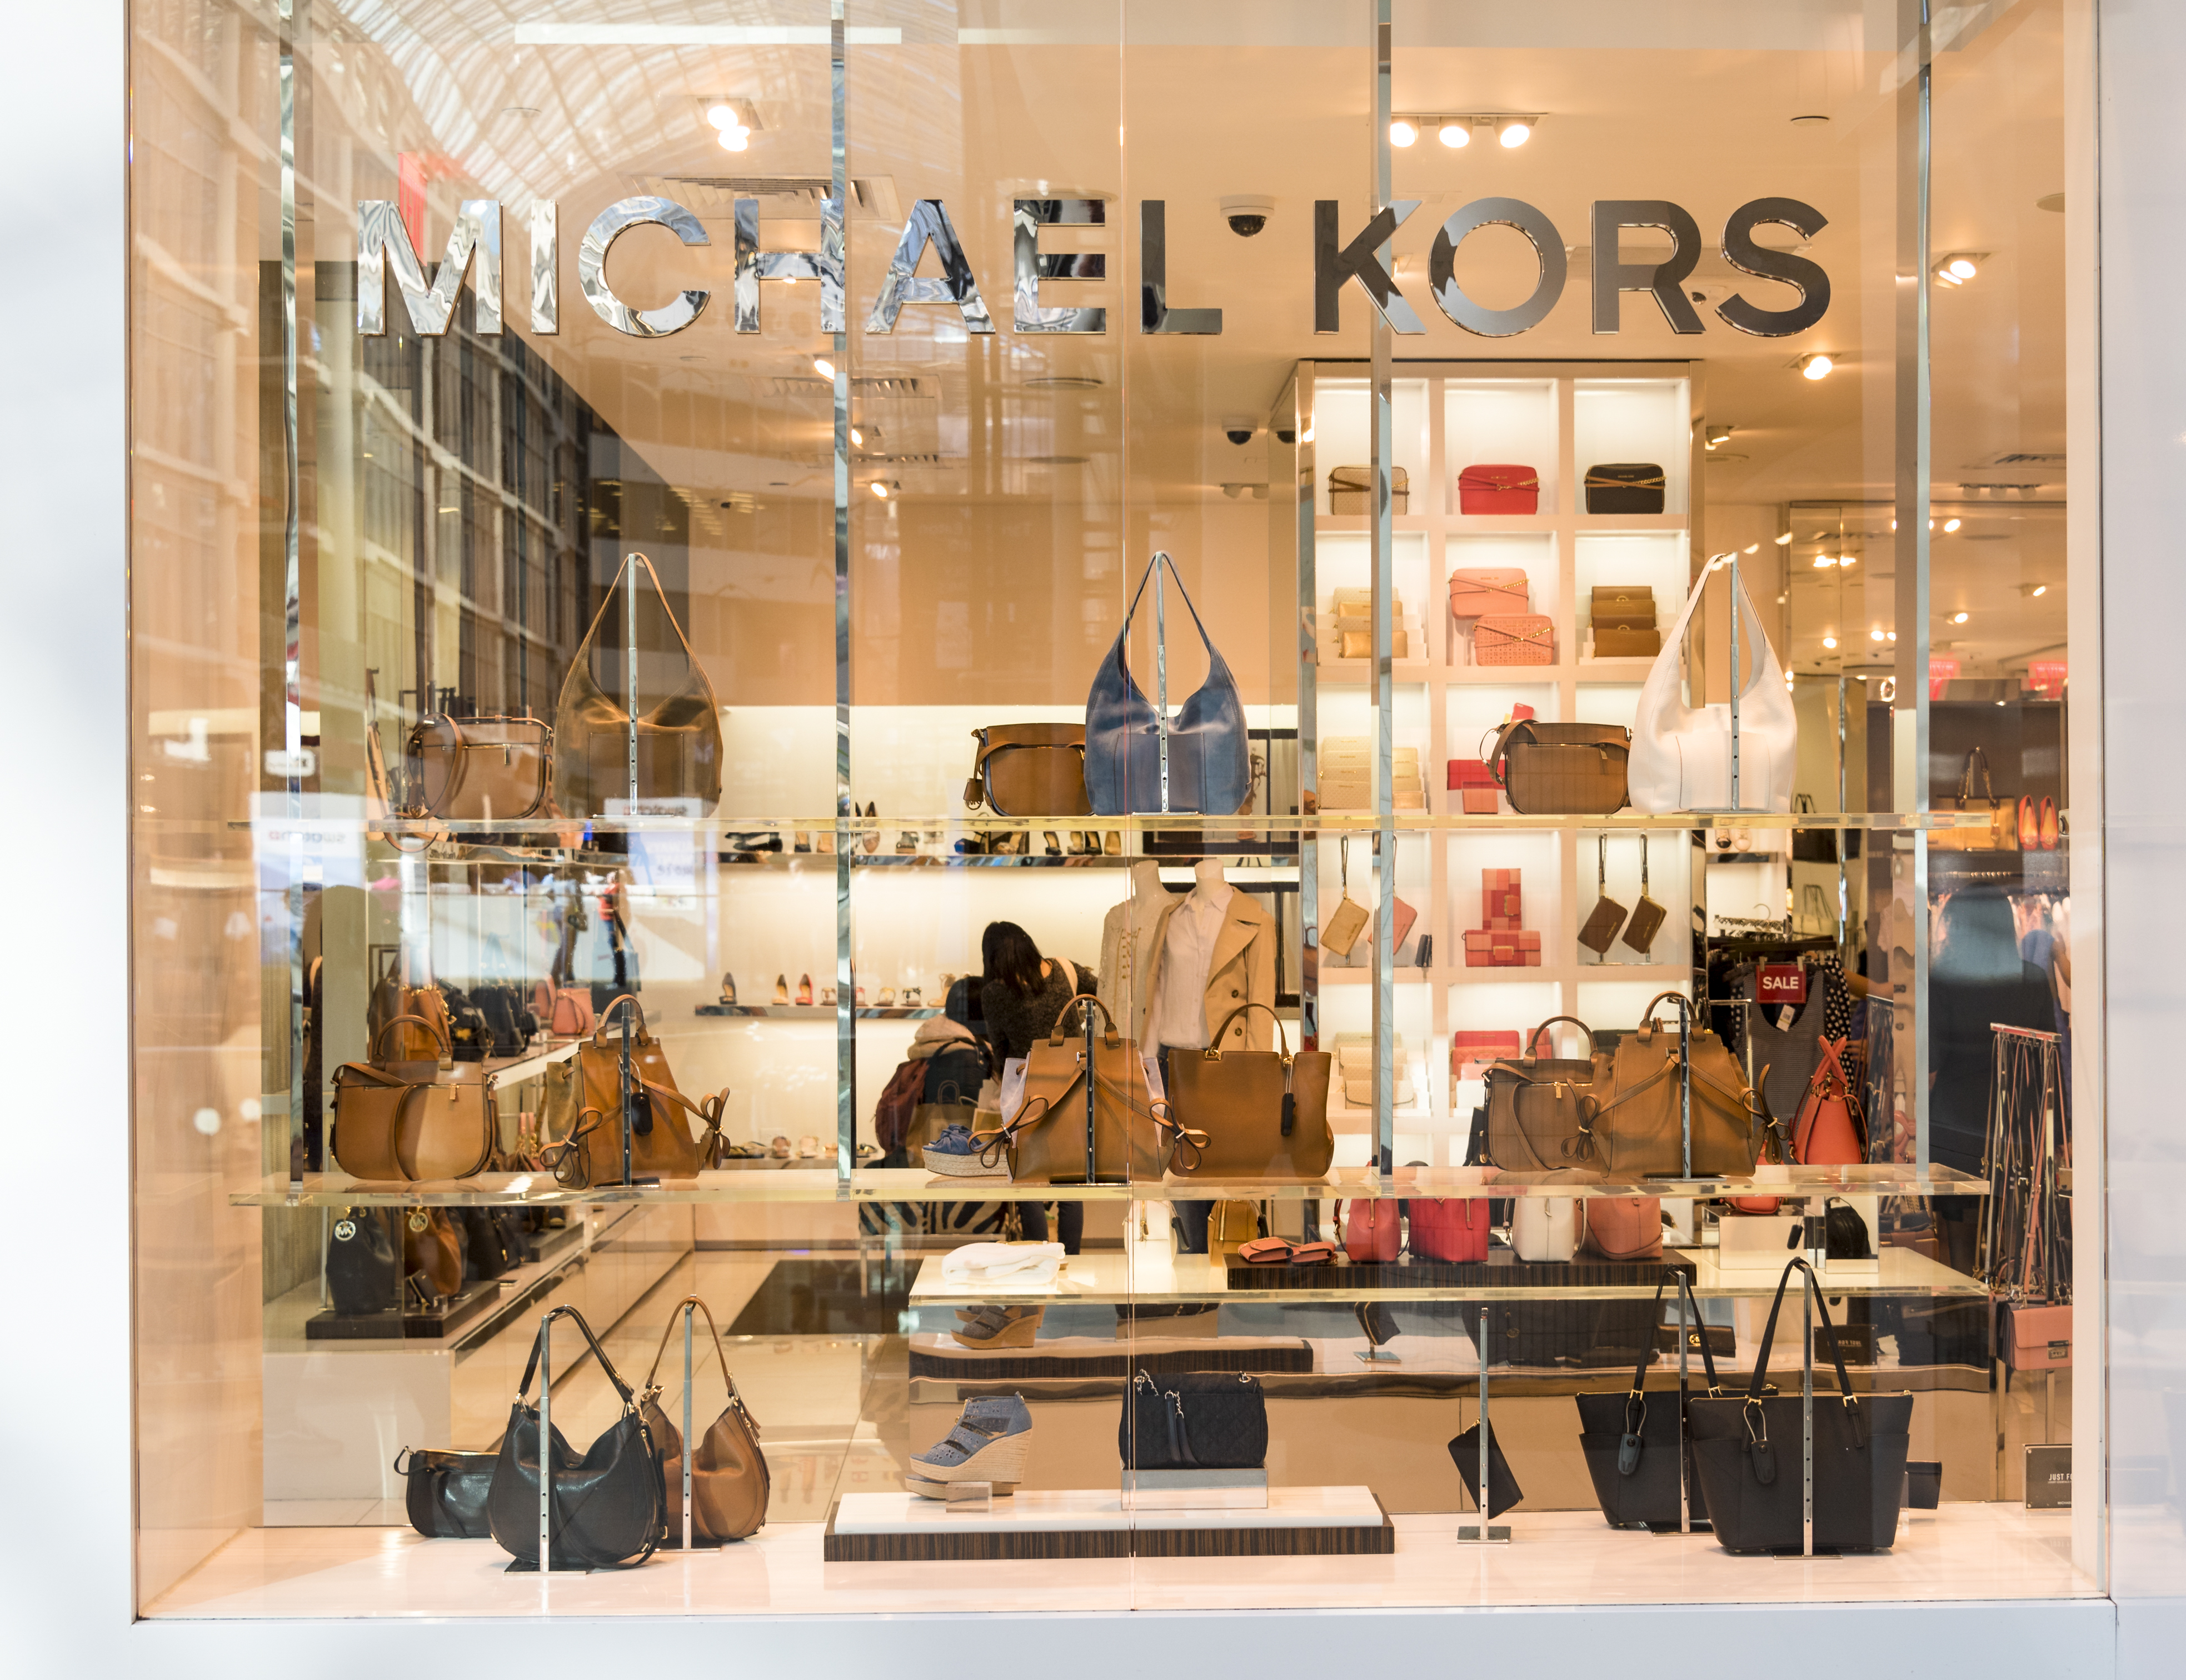 Michael Kors toont zijn feeling met Europa  RetailTrends hét platform  voor professionals in retail  brands